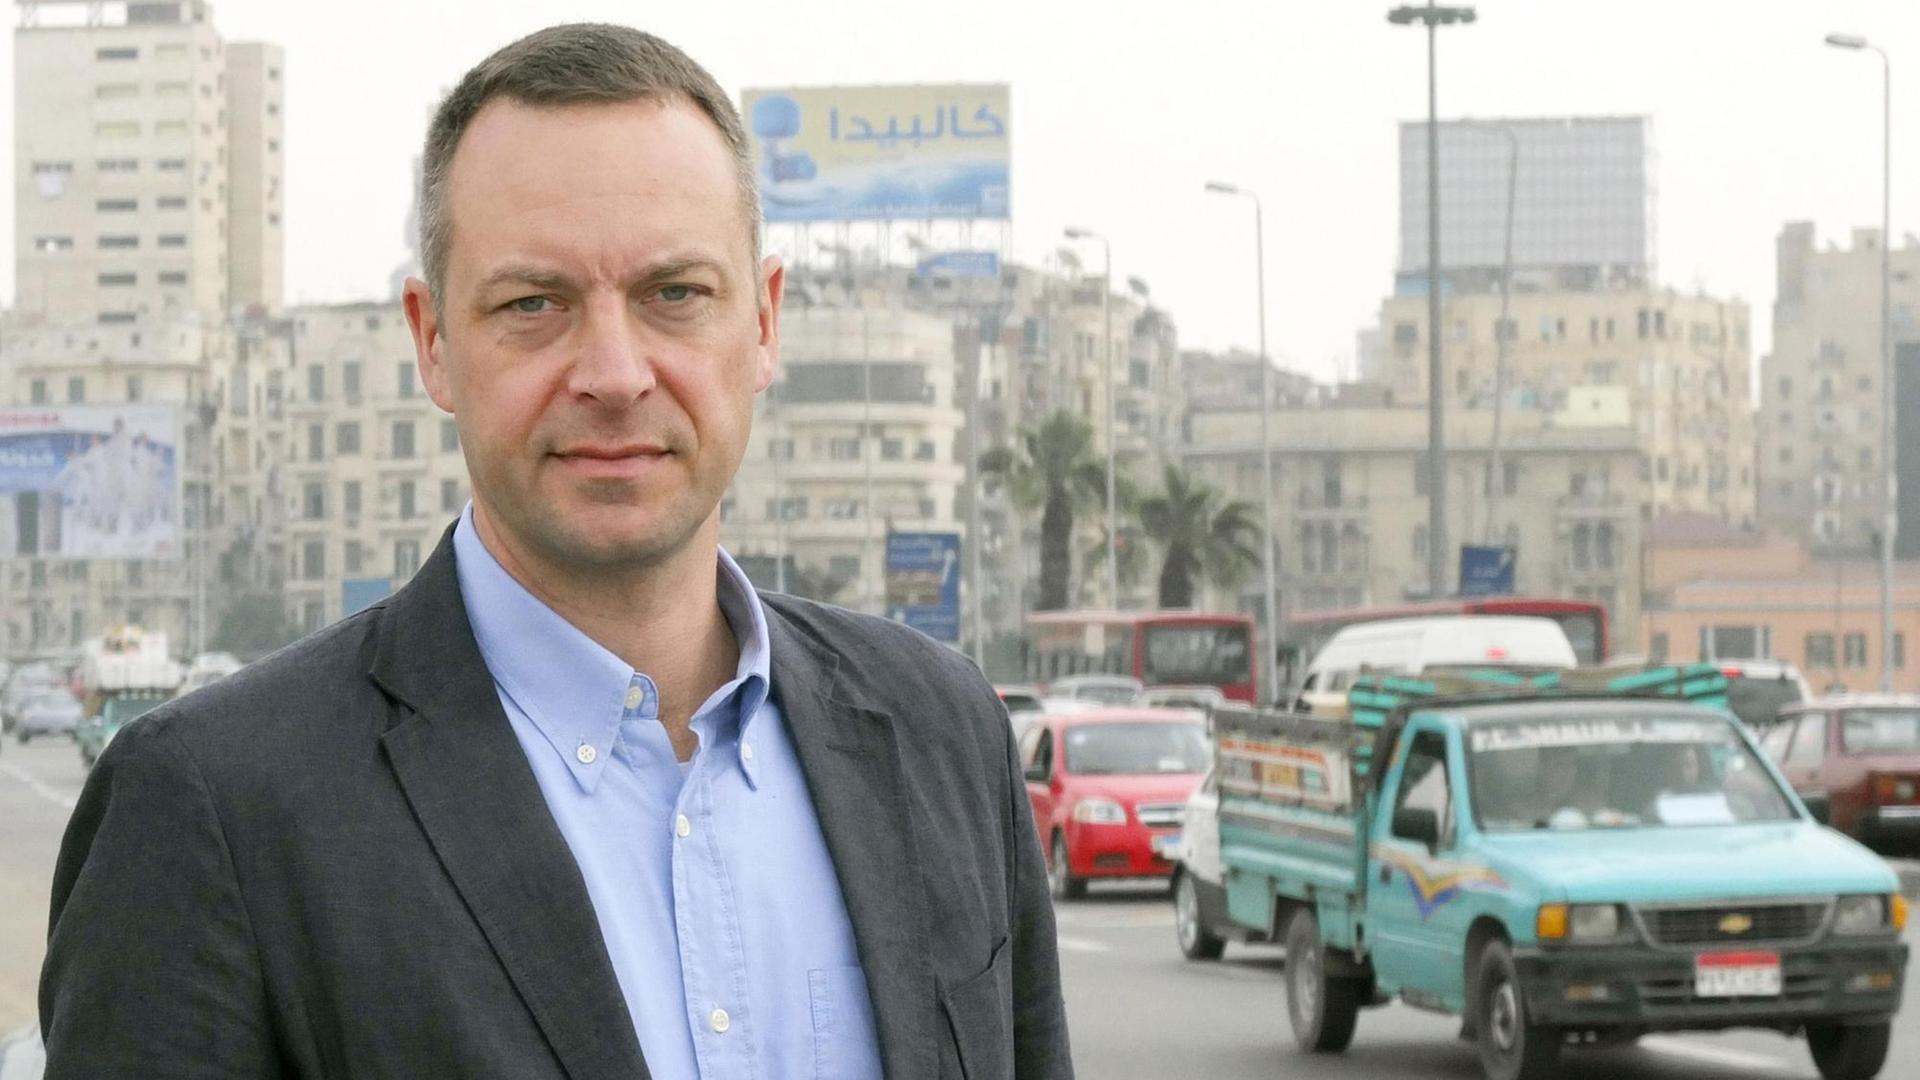 ARD-Korrespondent Volker Schwenck wurde bei seiner Einreise in die Türkei festgesetzt.